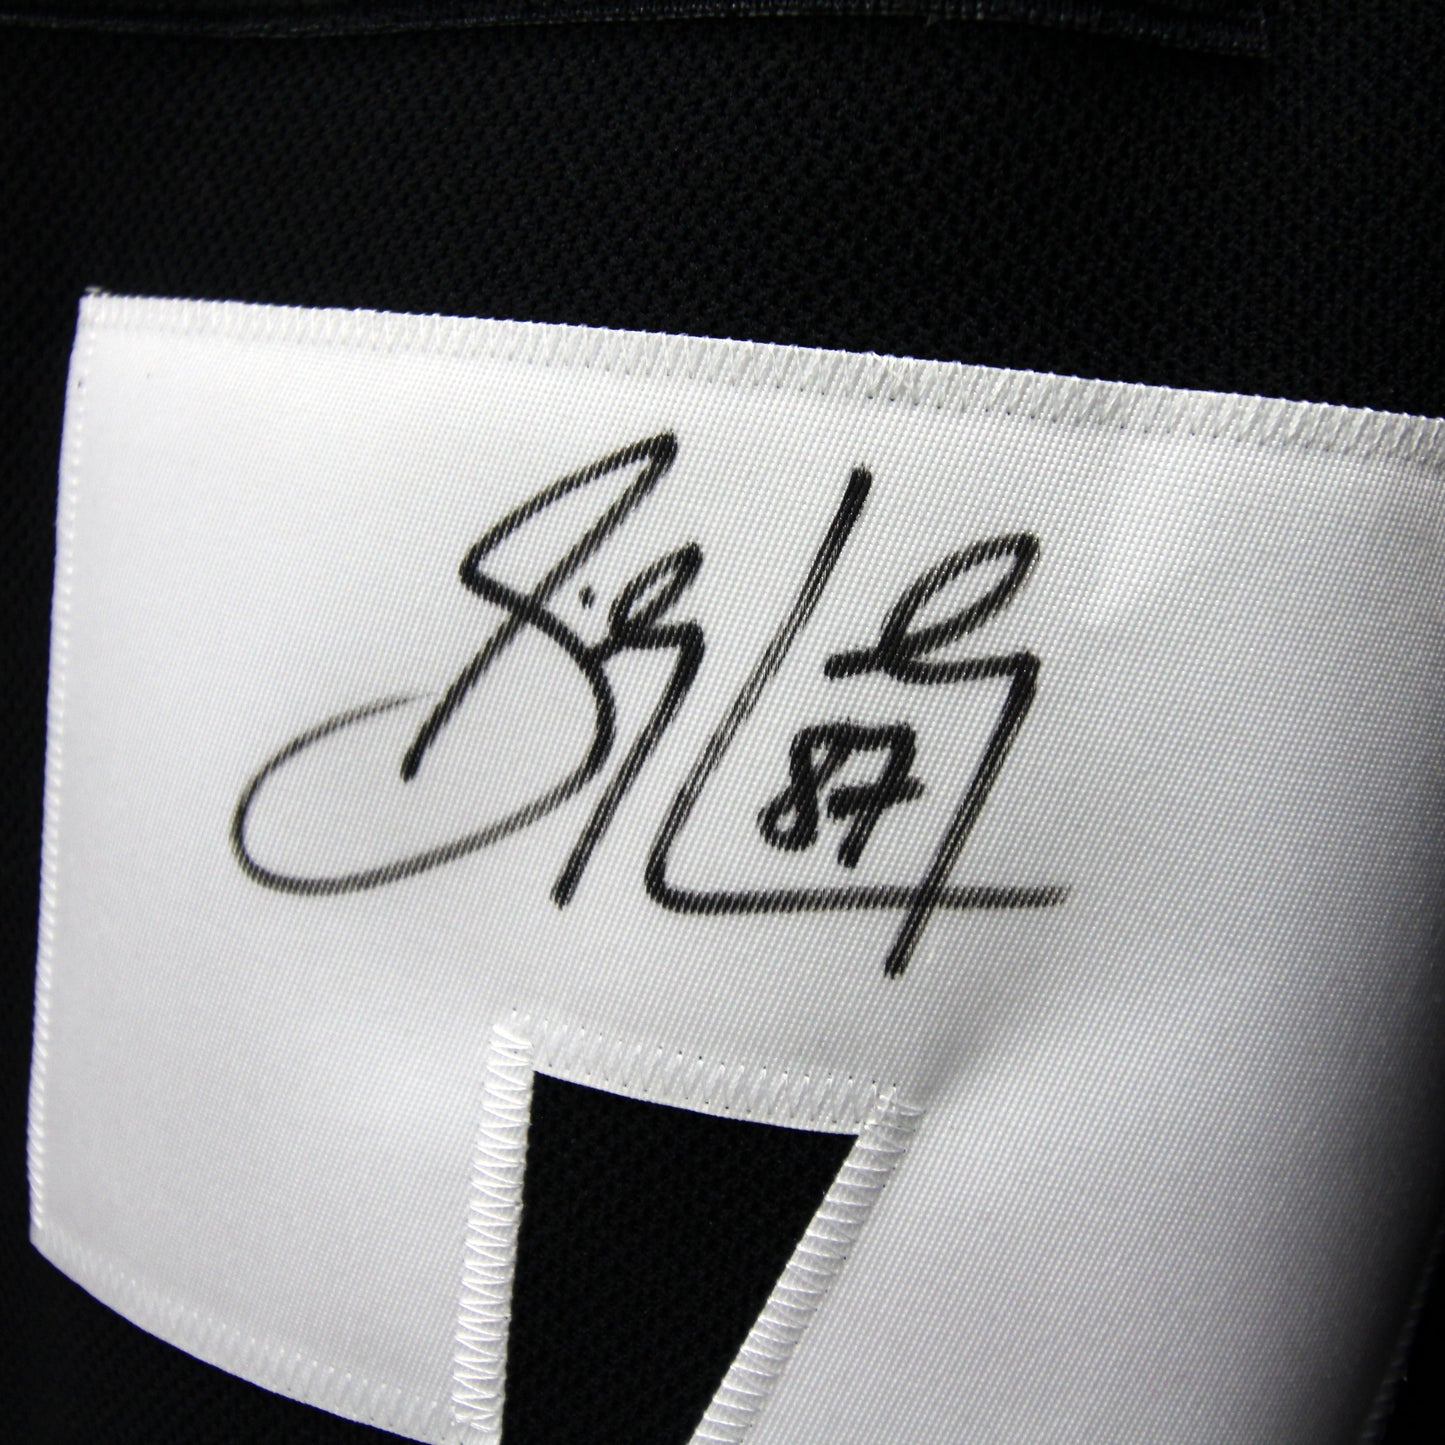 Sydney Crosby - Penguins - Autographed Jersey / Chandail autographié